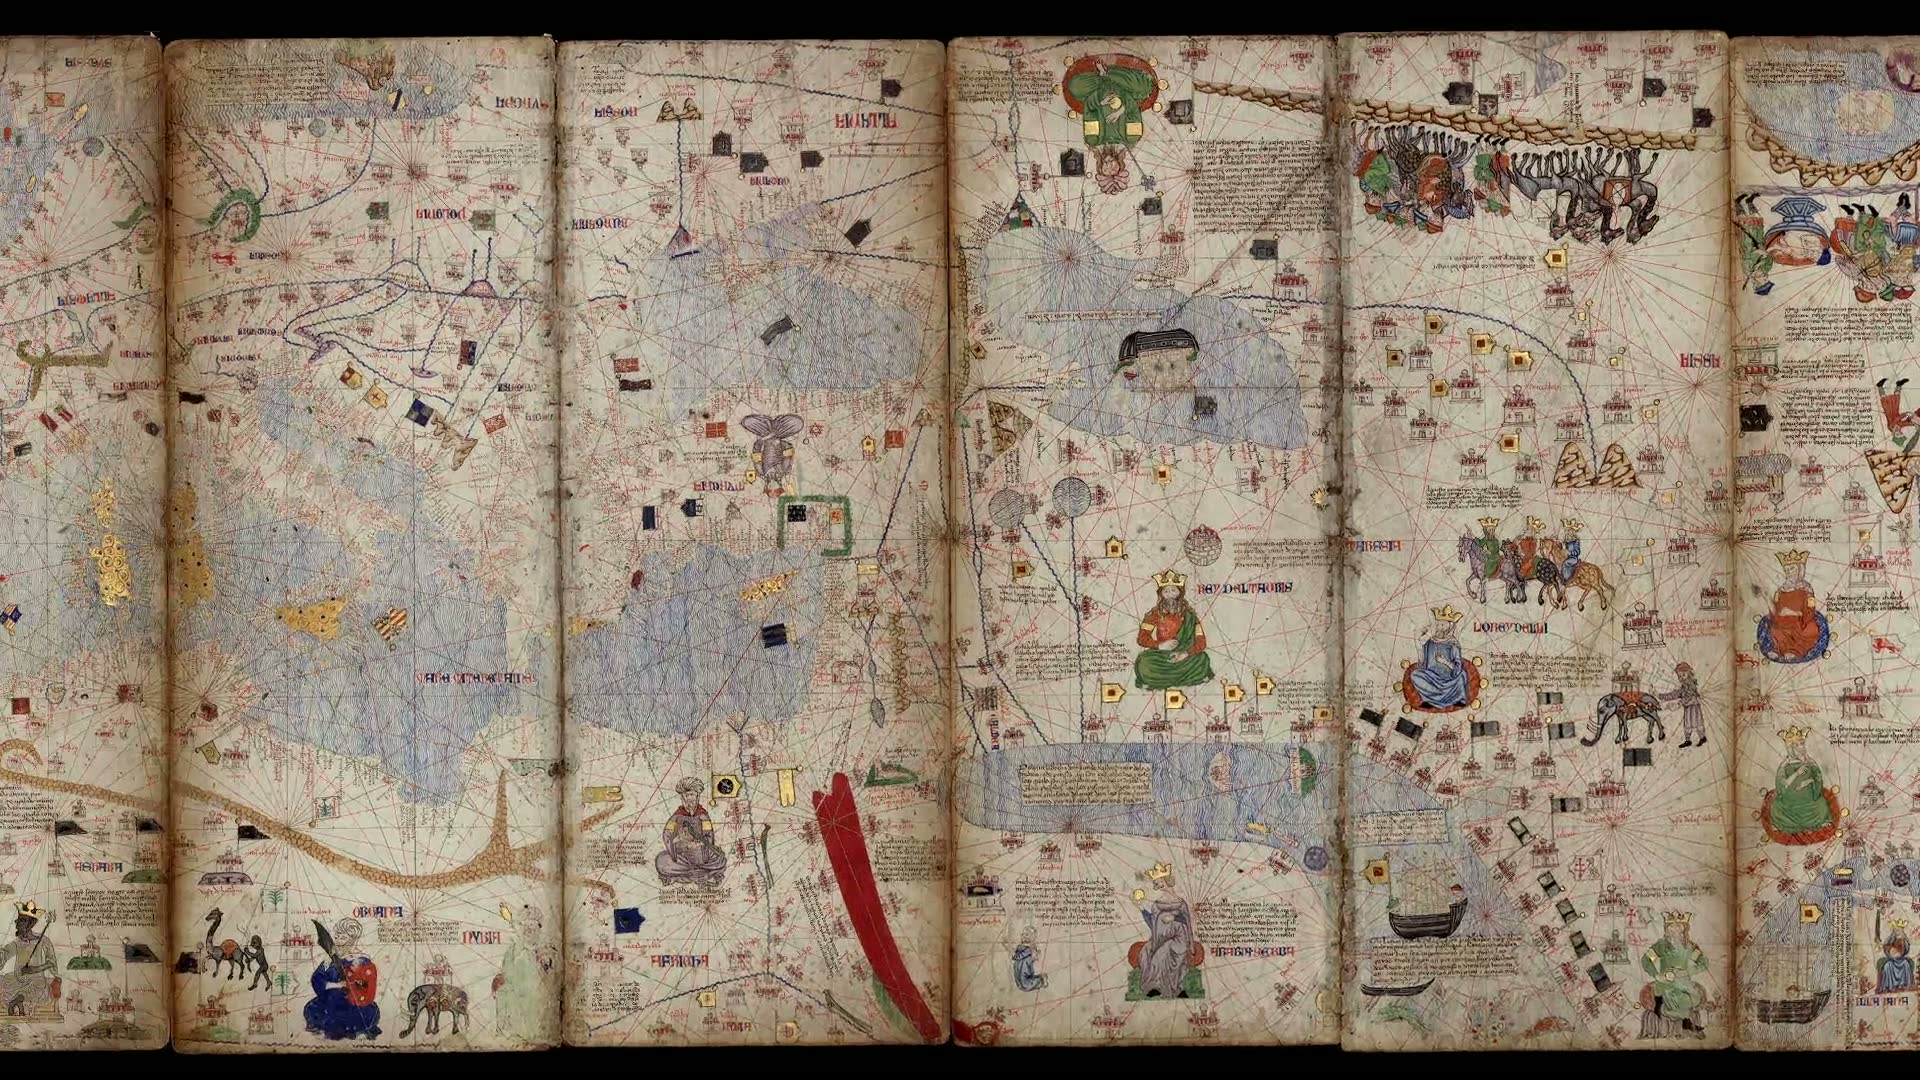 The Catalan Atlas